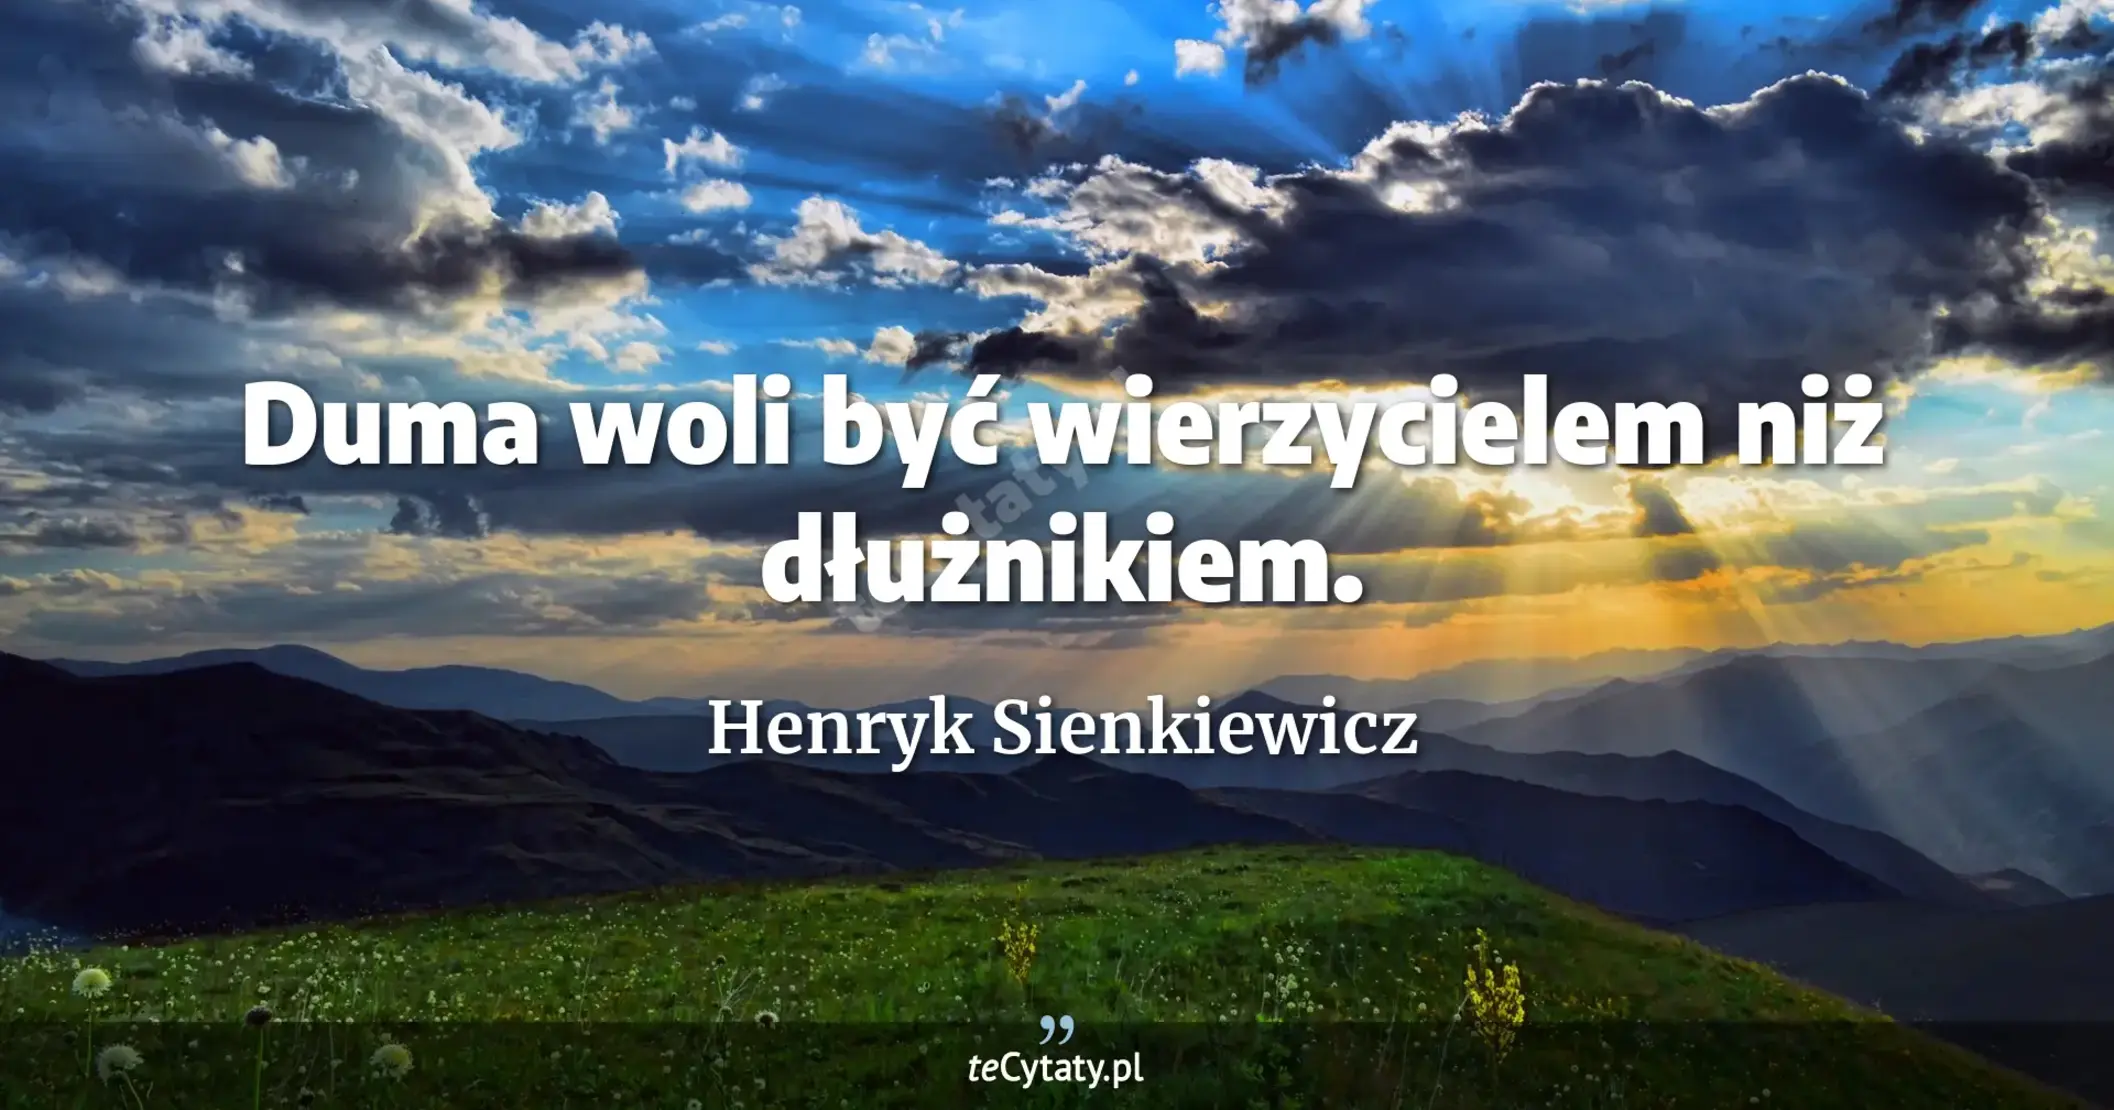 Duma woli być wierzycielem niż dłużnikiem. - Henryk Sienkiewicz